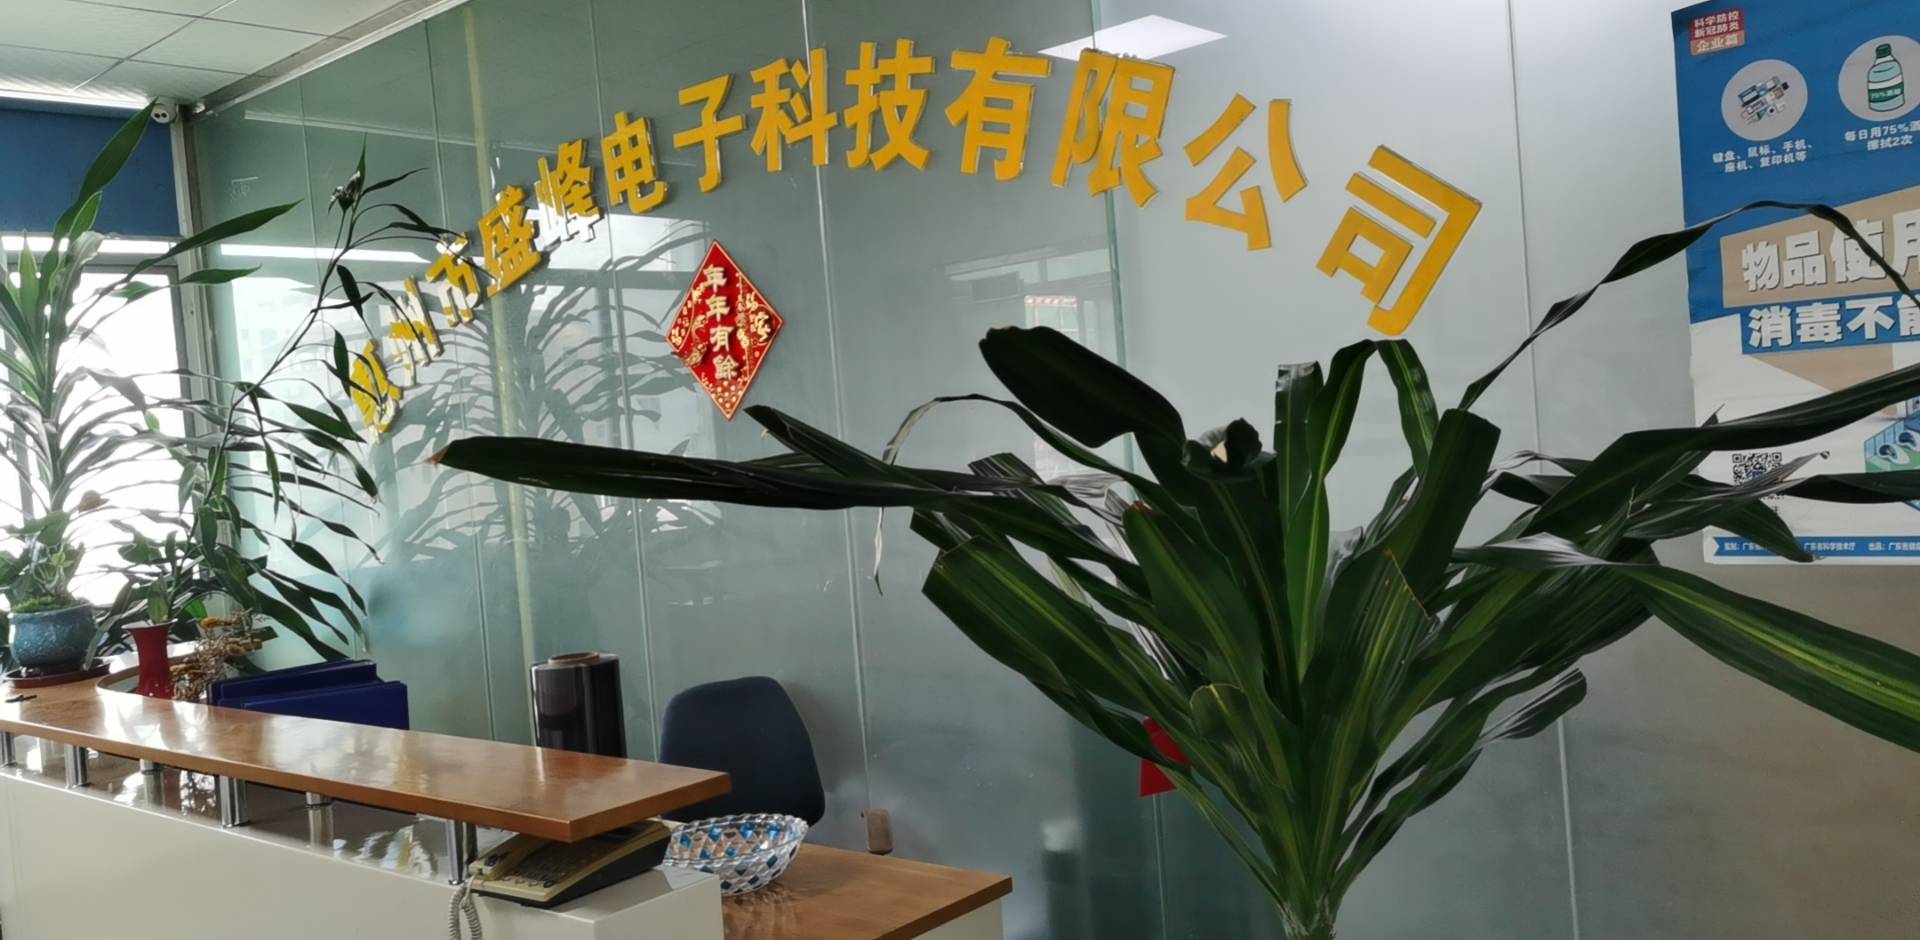 惠州市盛峰电子科技有限公司